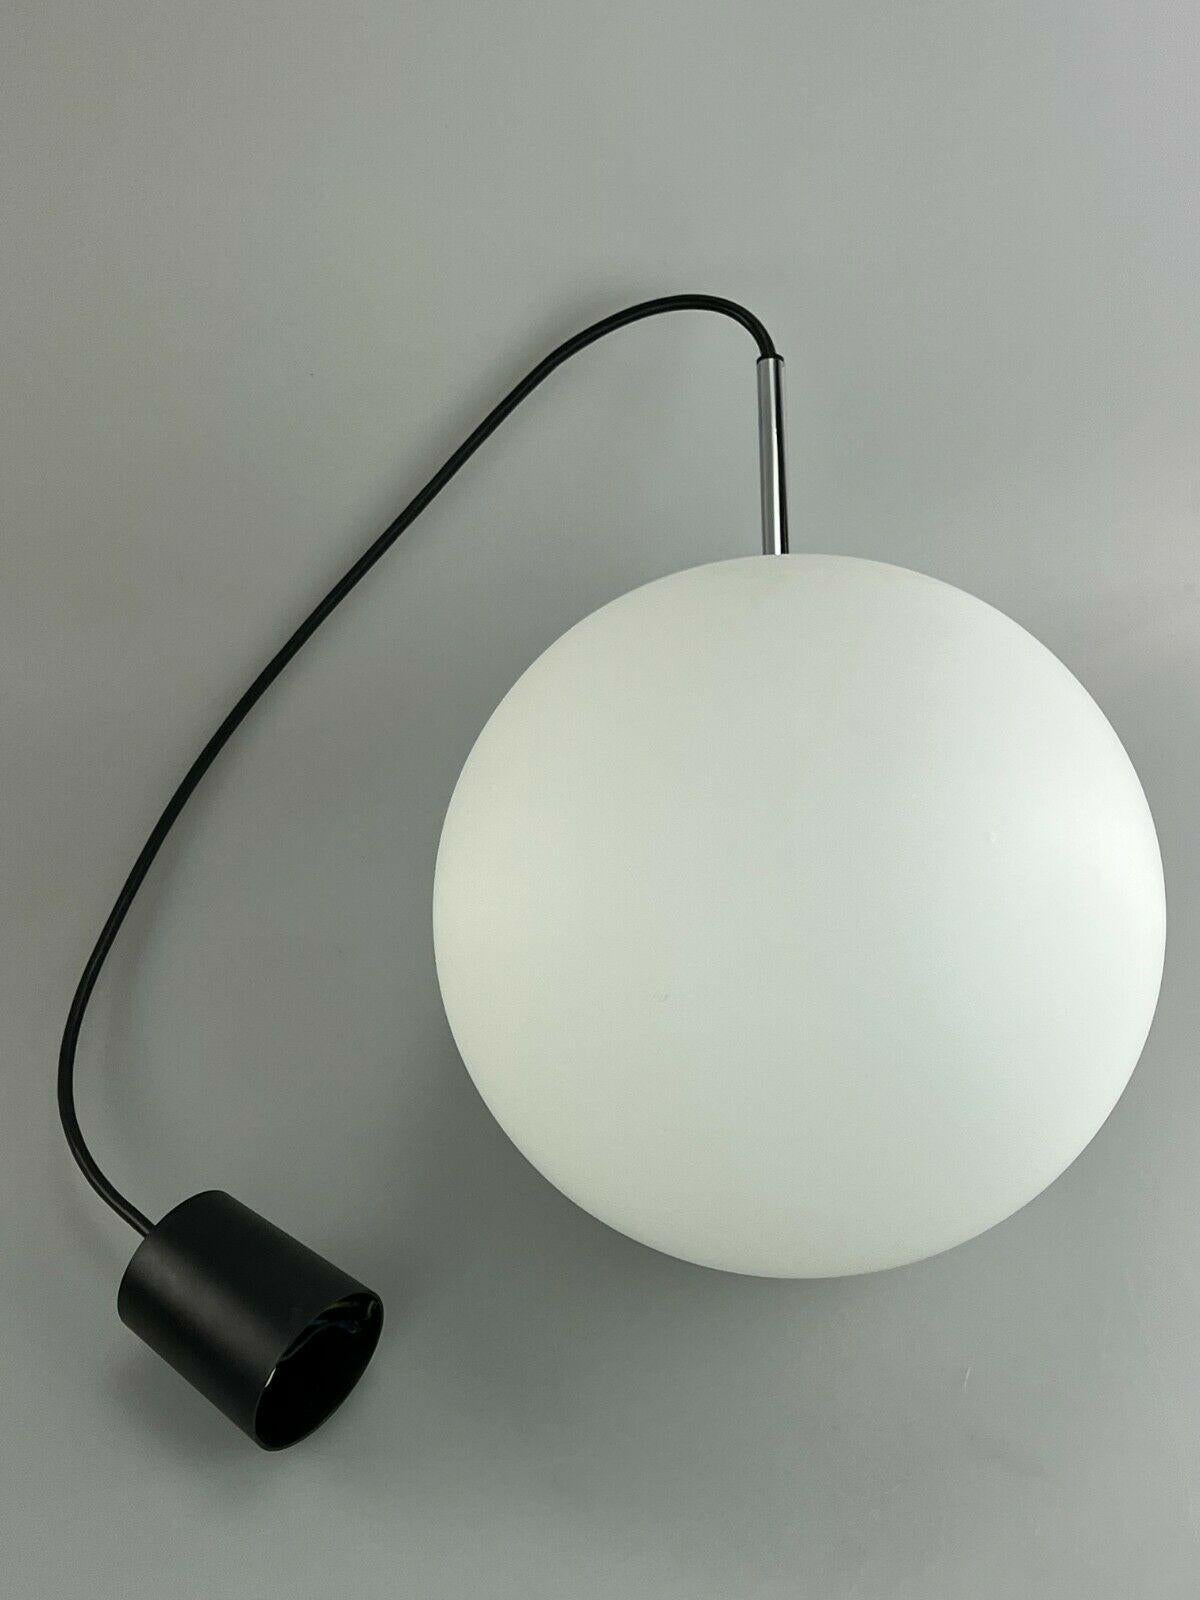 60s 70s Lamp Light Ceiling Lamp Limburg Spherical Lamp Ball Design 60s For Sale 4